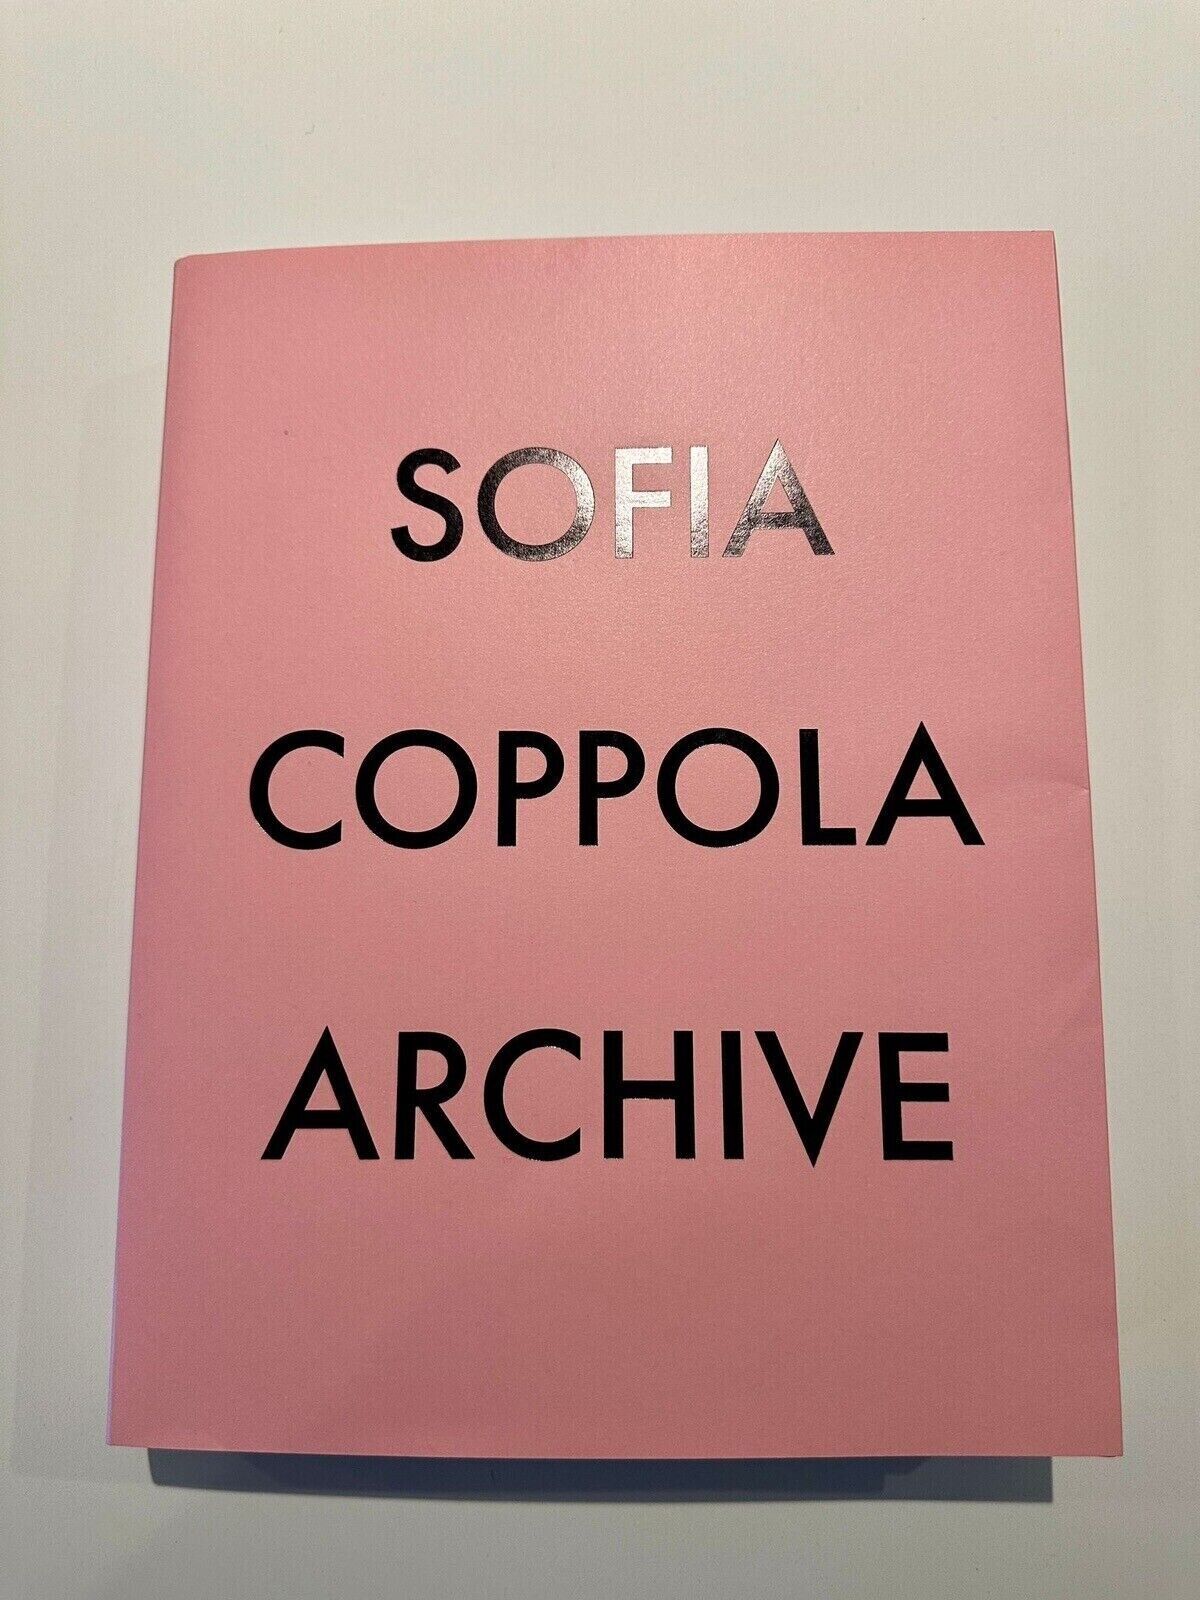 Sofia Coppola Archive Signed Book